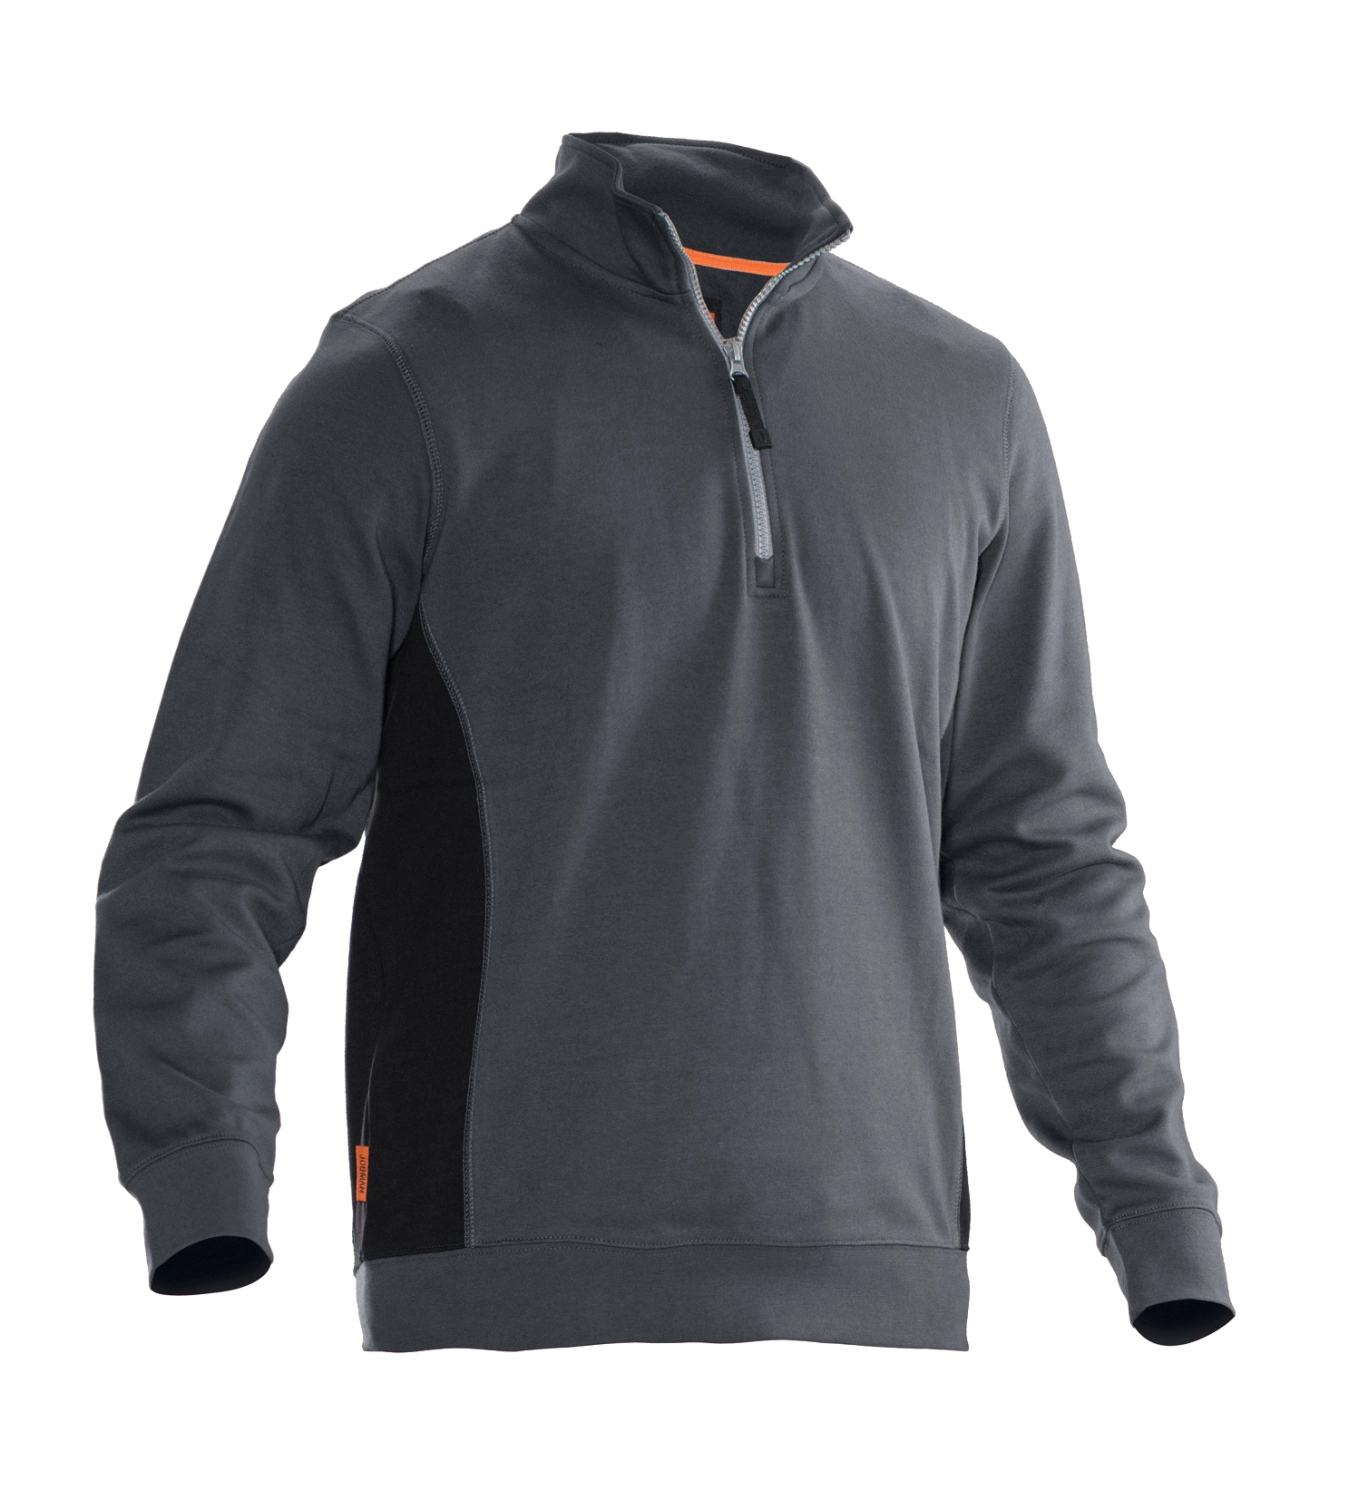 Jobman 5401 Sweatshirt met rits - Maat L - Grijs/Zwart-image